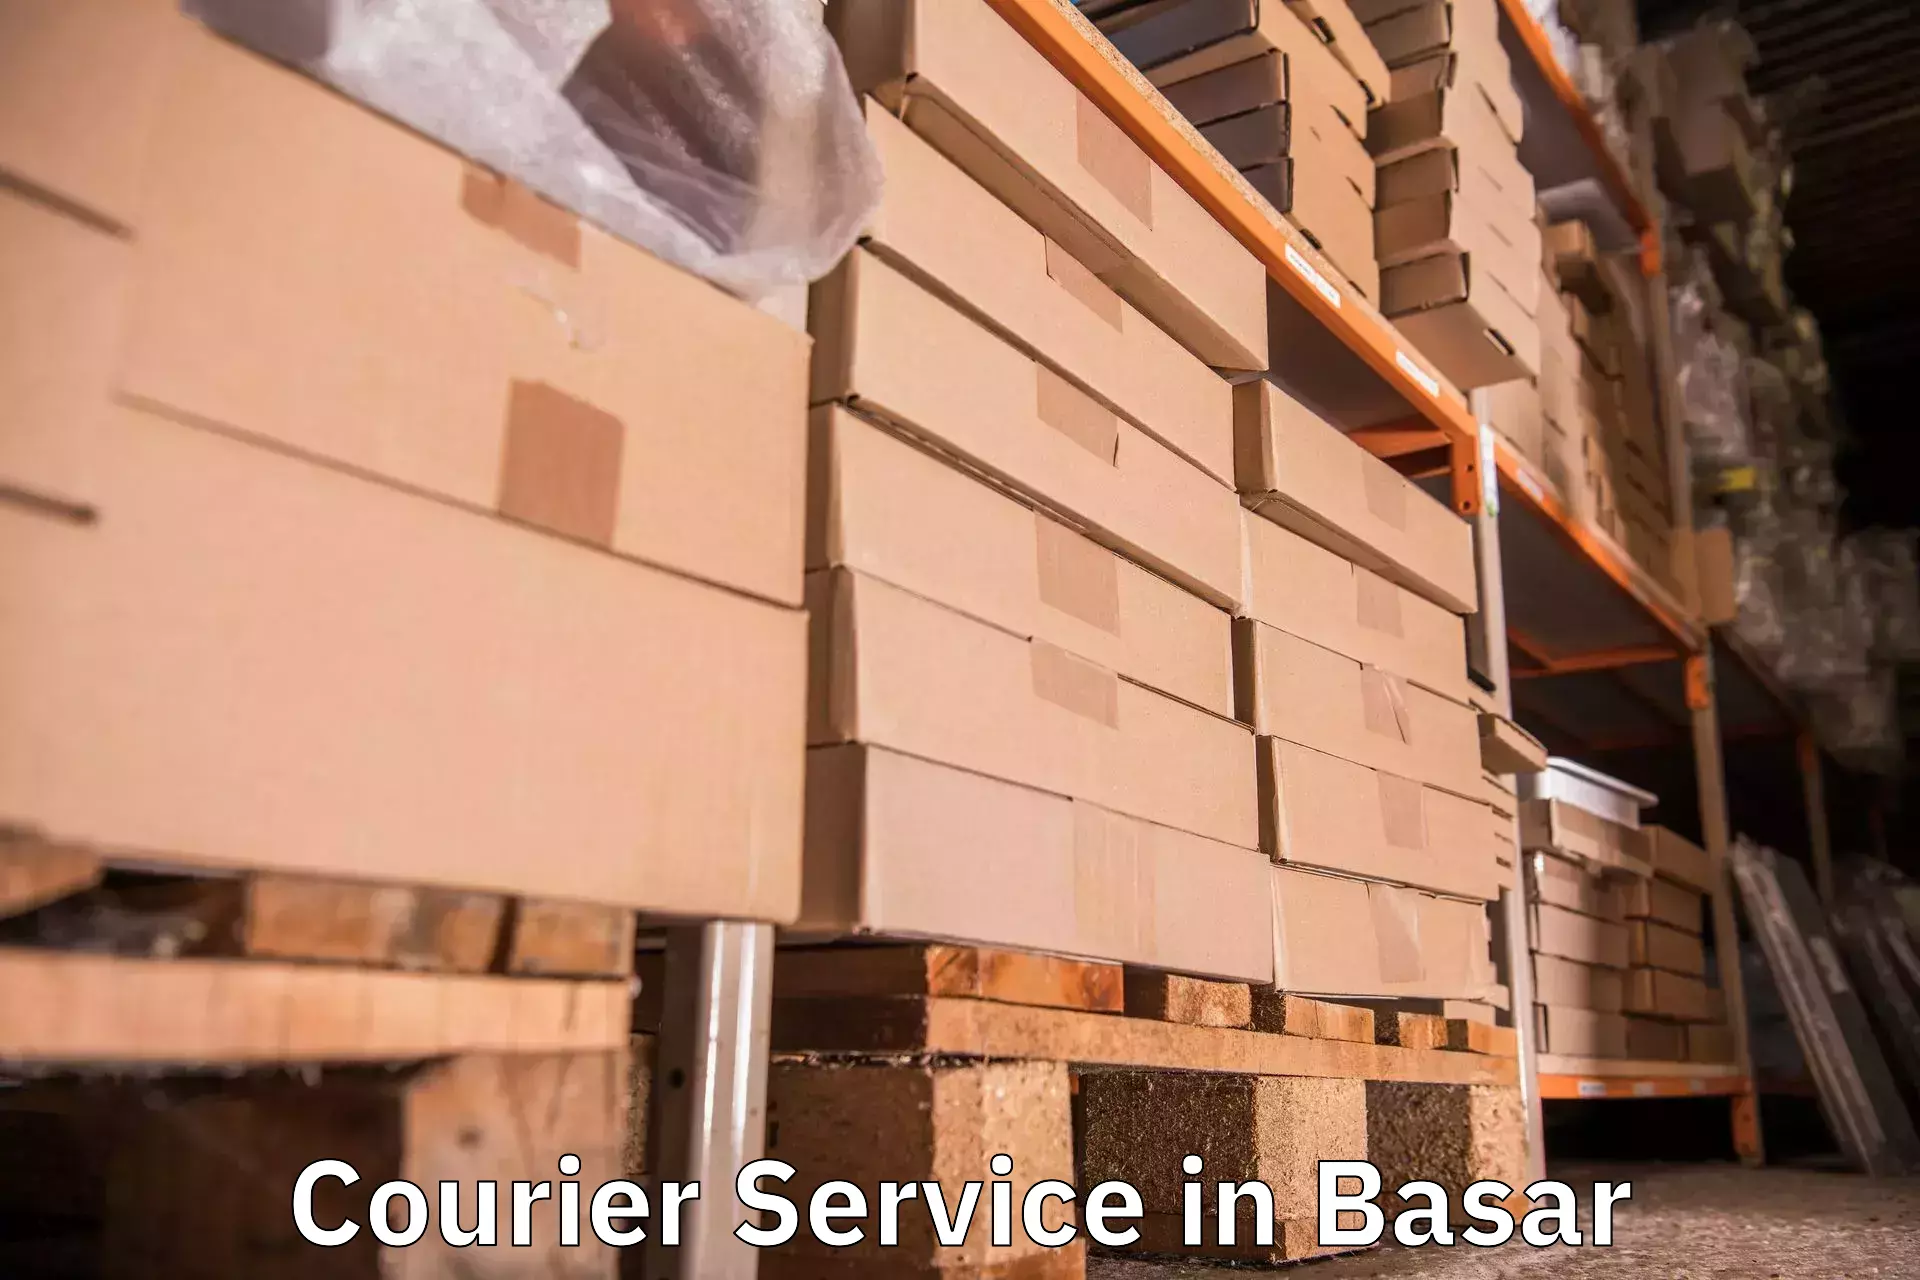 Bulk shipment in Basar